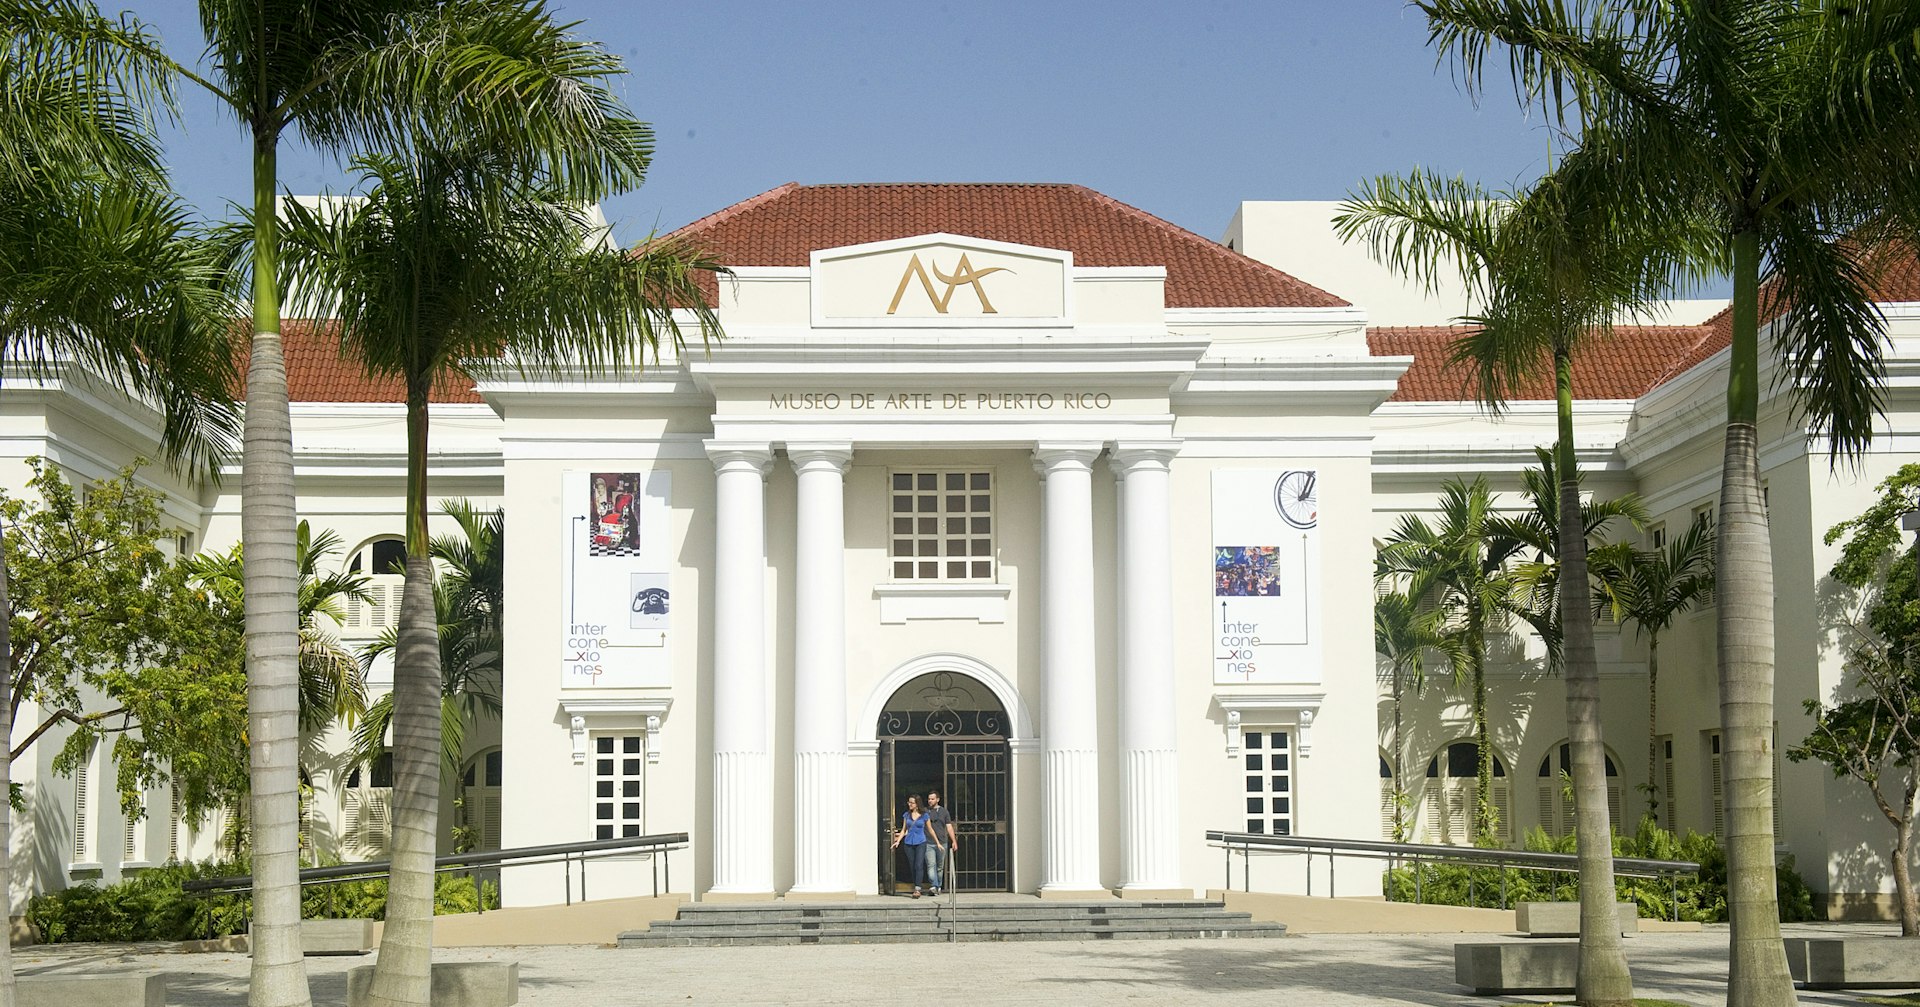  The entrance of the Museo de Arte de Puerto Rico (Puerto Rican Museum of Art